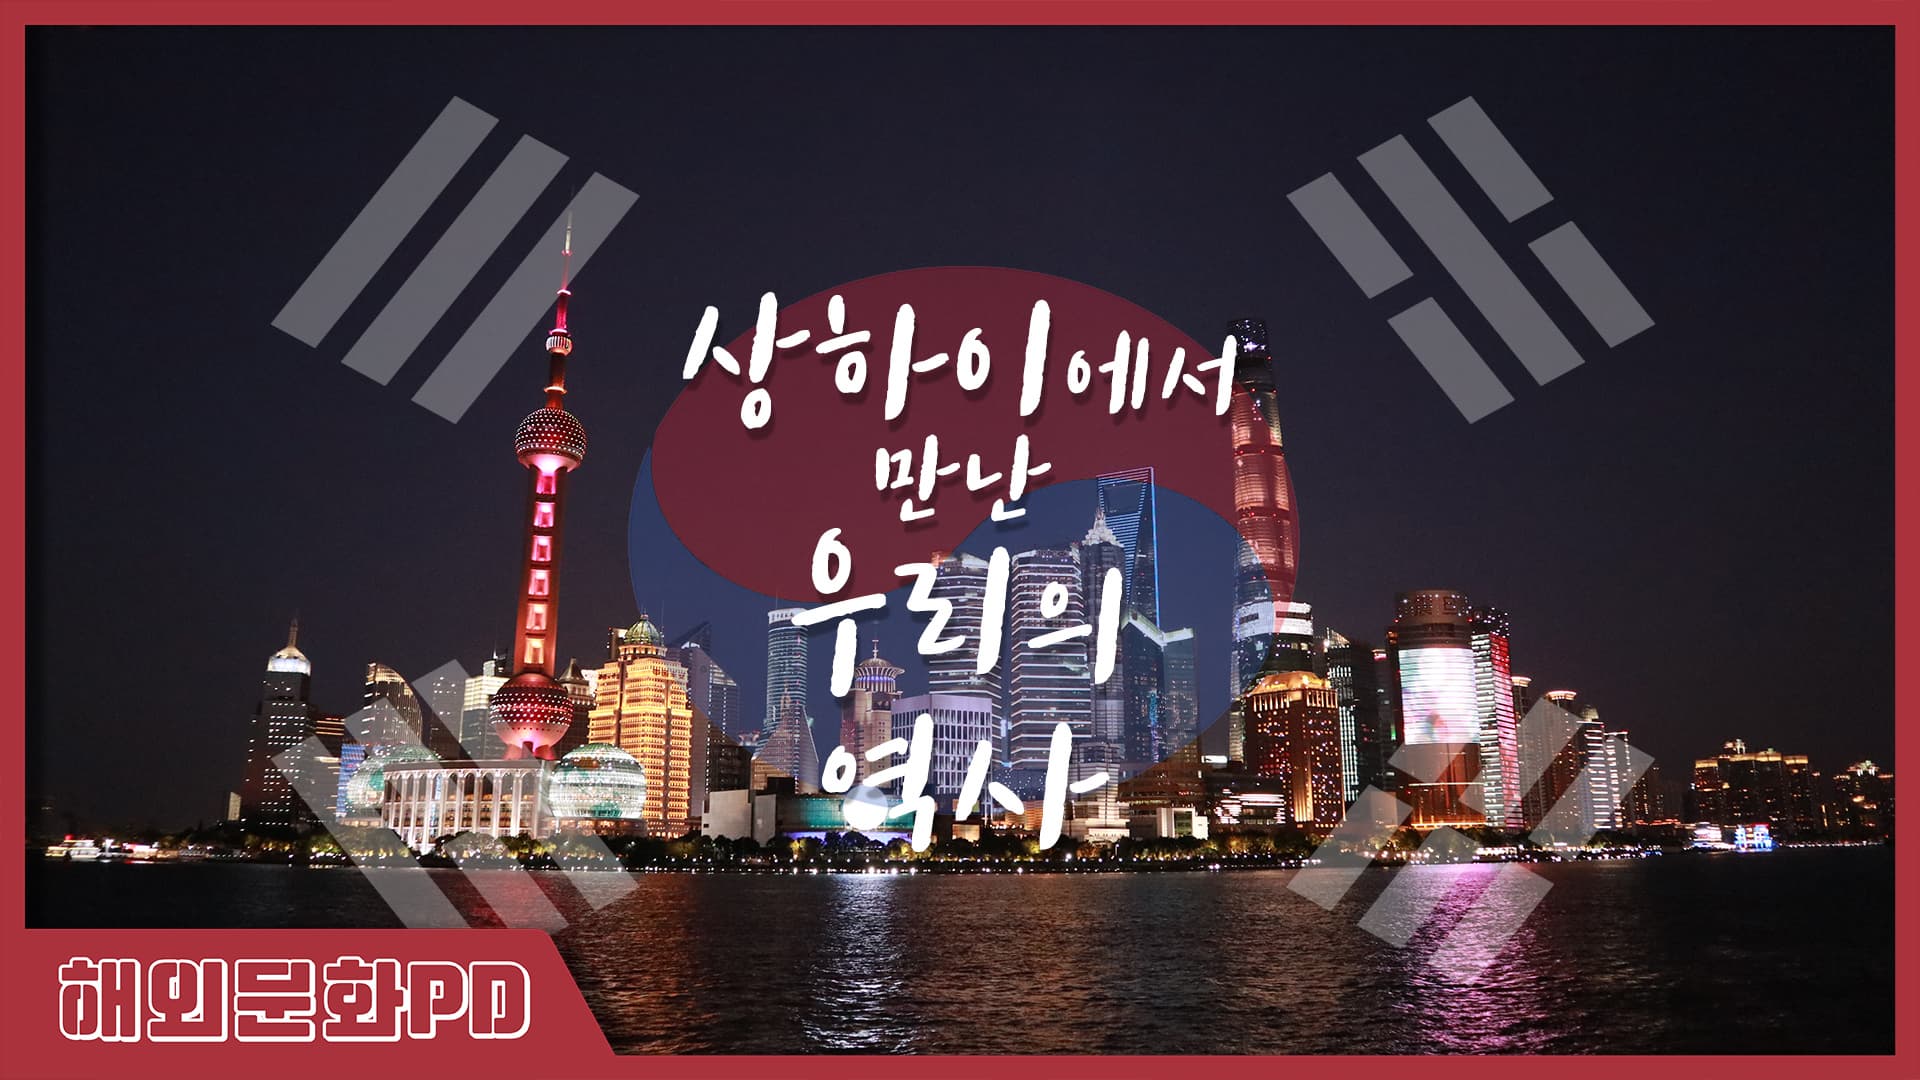 [해외문화PD 기획영상] 상하이에서 만난 우리의 역사